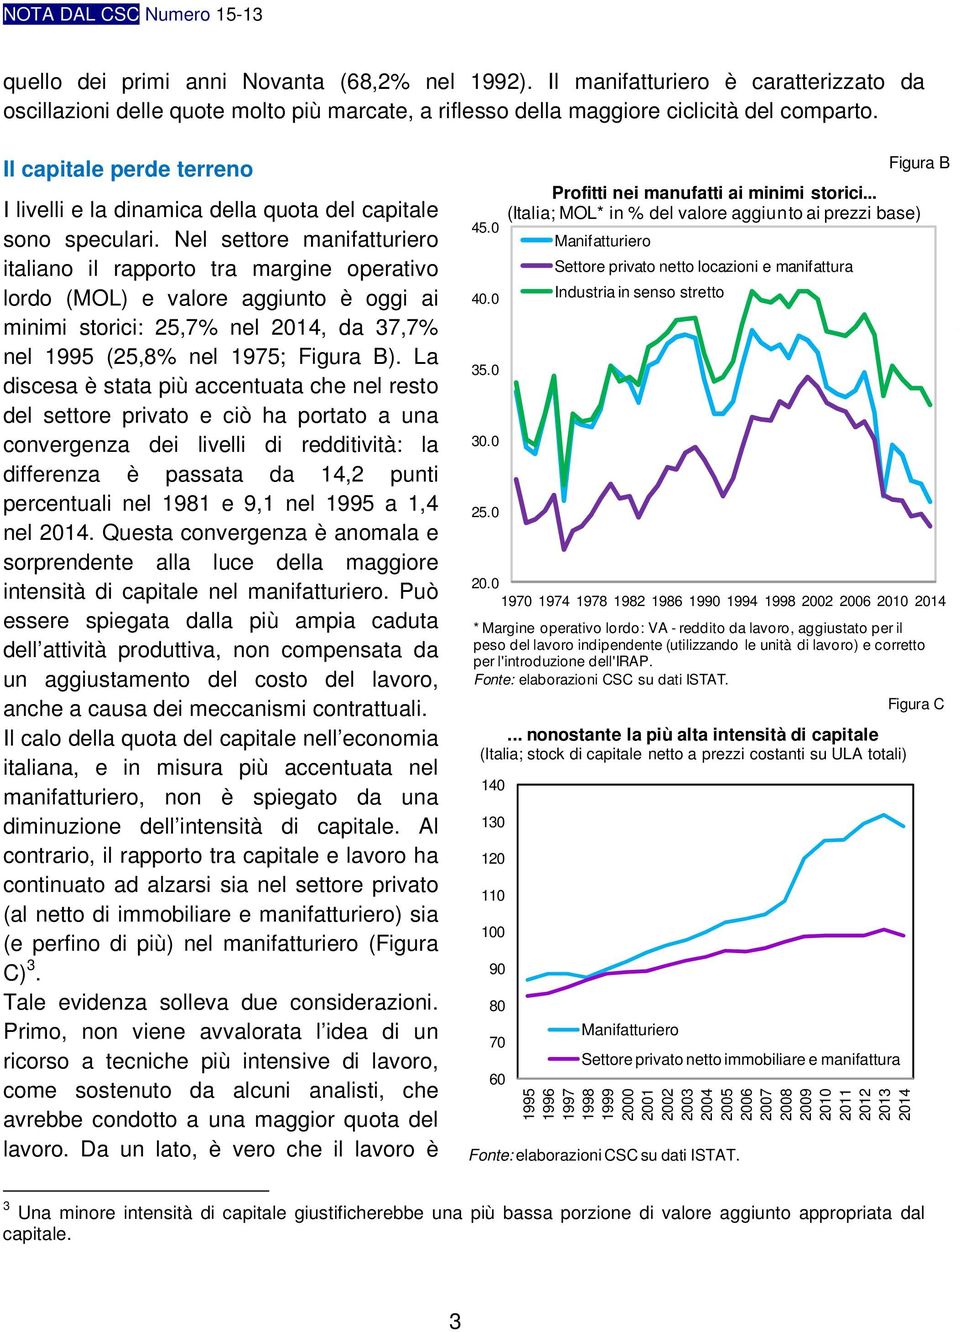 Nel settore manifatturiero italiano il rapporto tra margine operativo lordo (MOL) e valore aggiunto è oggi ai minimi storici: 25,7% nel 2014, da 37,7% nel 1995 (25,8% nel 1975; Figura B).